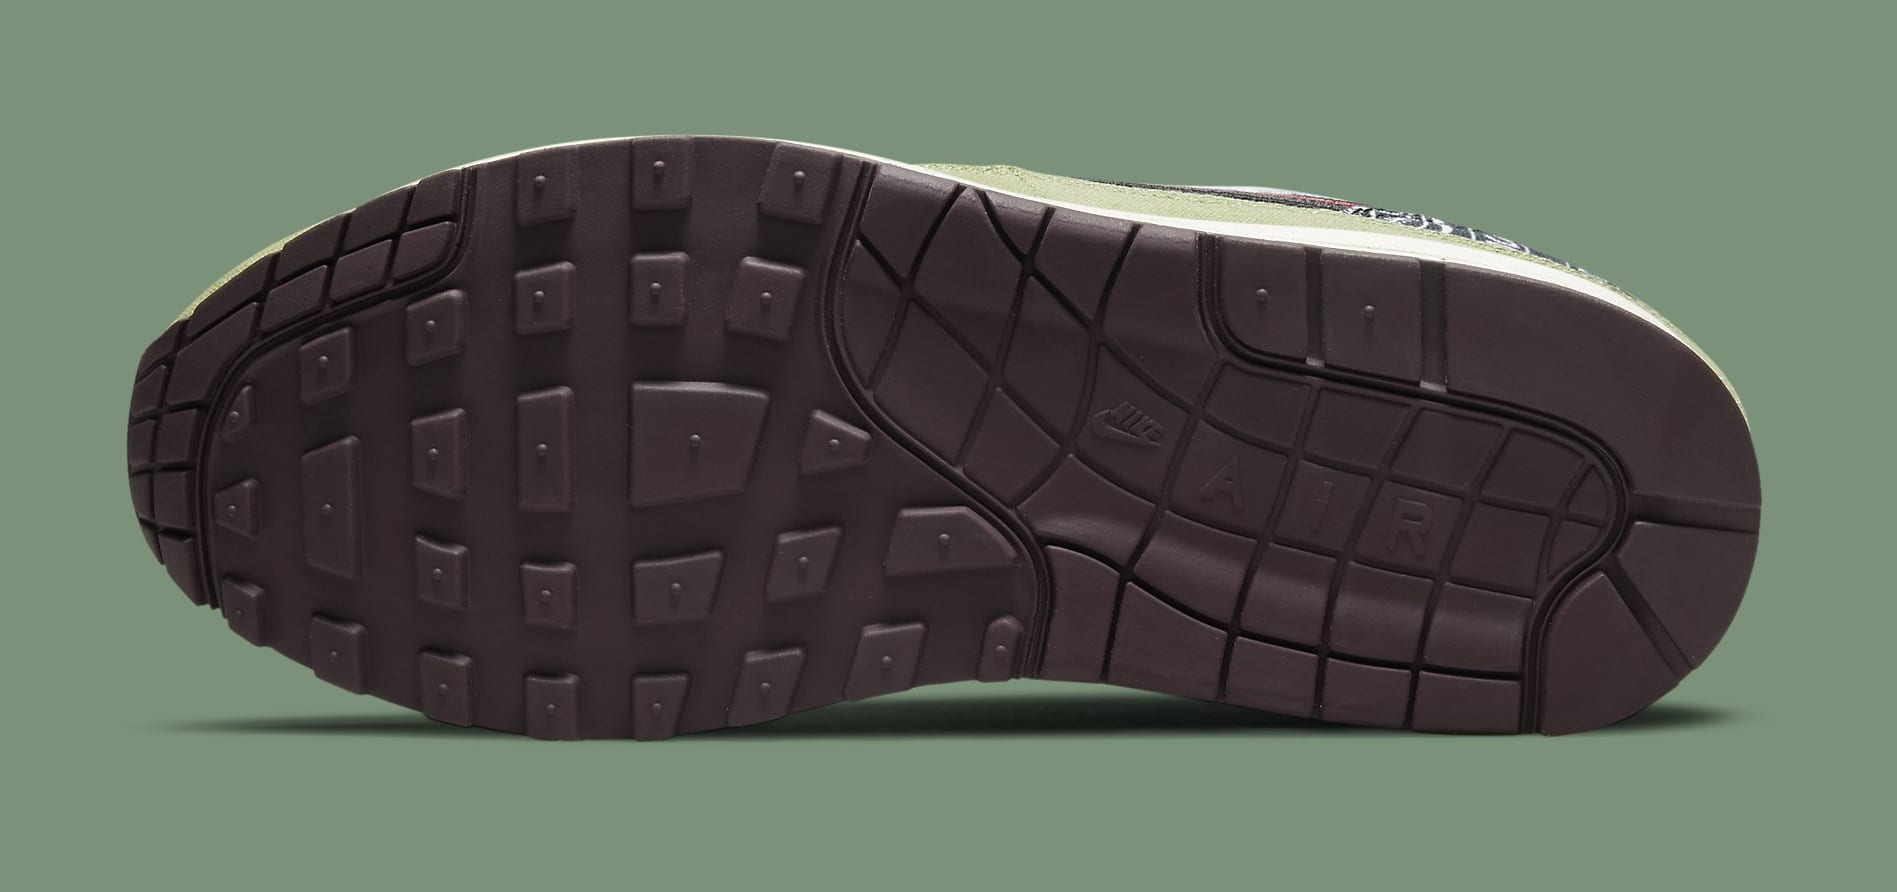 Concepts x Nike Air Max 1 'Bandana' DN1803 300 Outsole